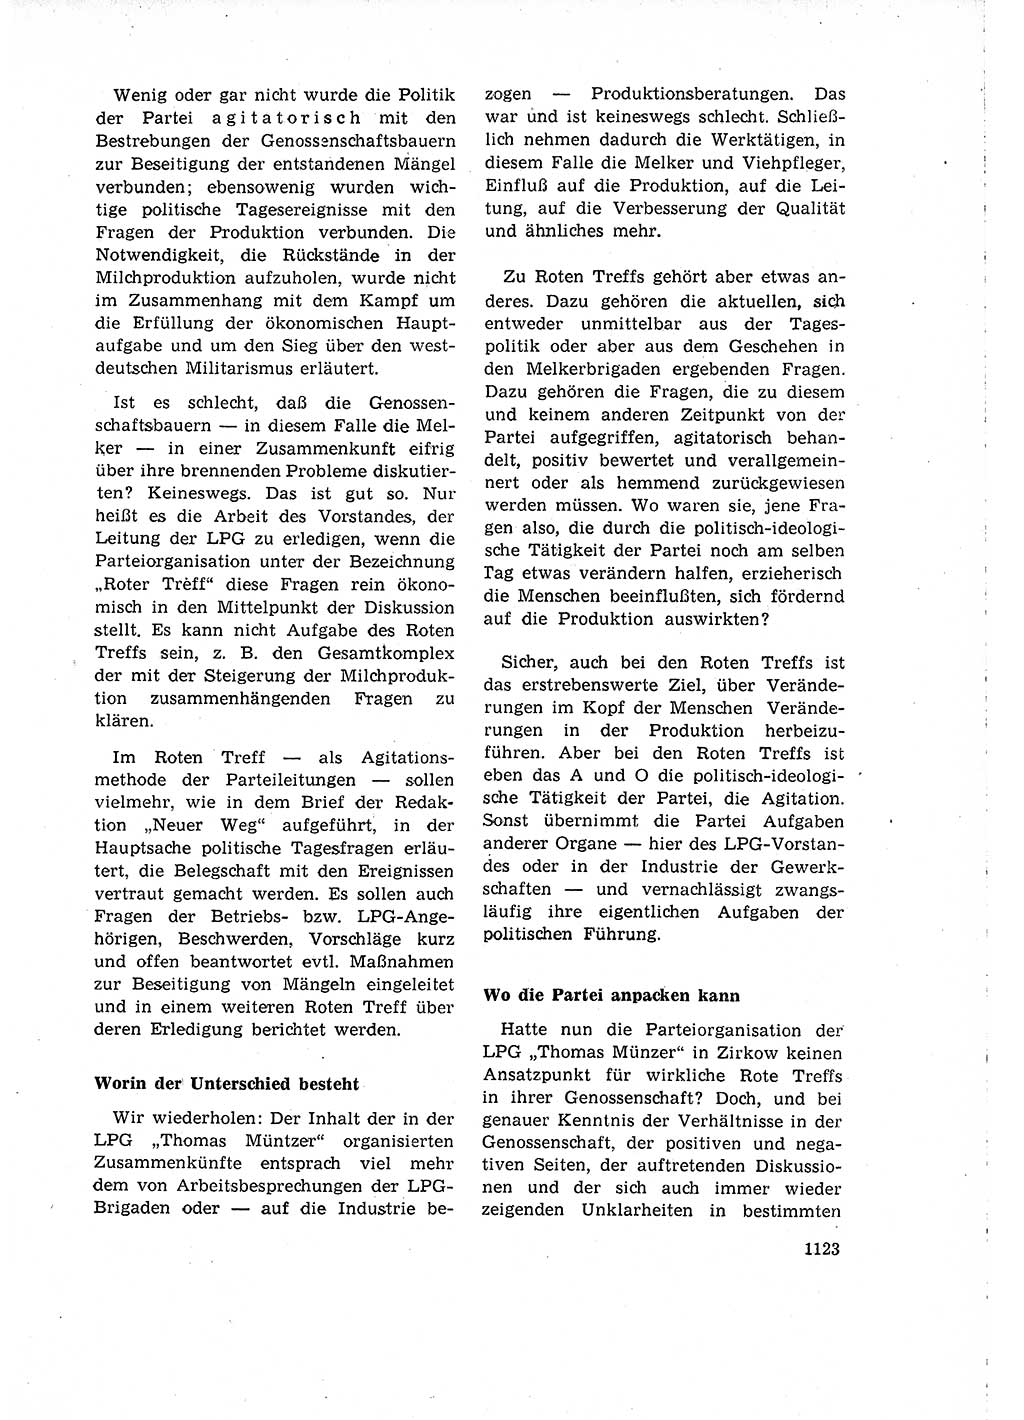 Neuer Weg (NW), Organ des Zentralkomitees (ZK) der SED (Sozialistische Einheitspartei Deutschlands) für Fragen des Parteilebens, 15. Jahrgang [Deutsche Demokratische Republik (DDR)] 1960, Seite 1123 (NW ZK SED DDR 1960, S. 1123)